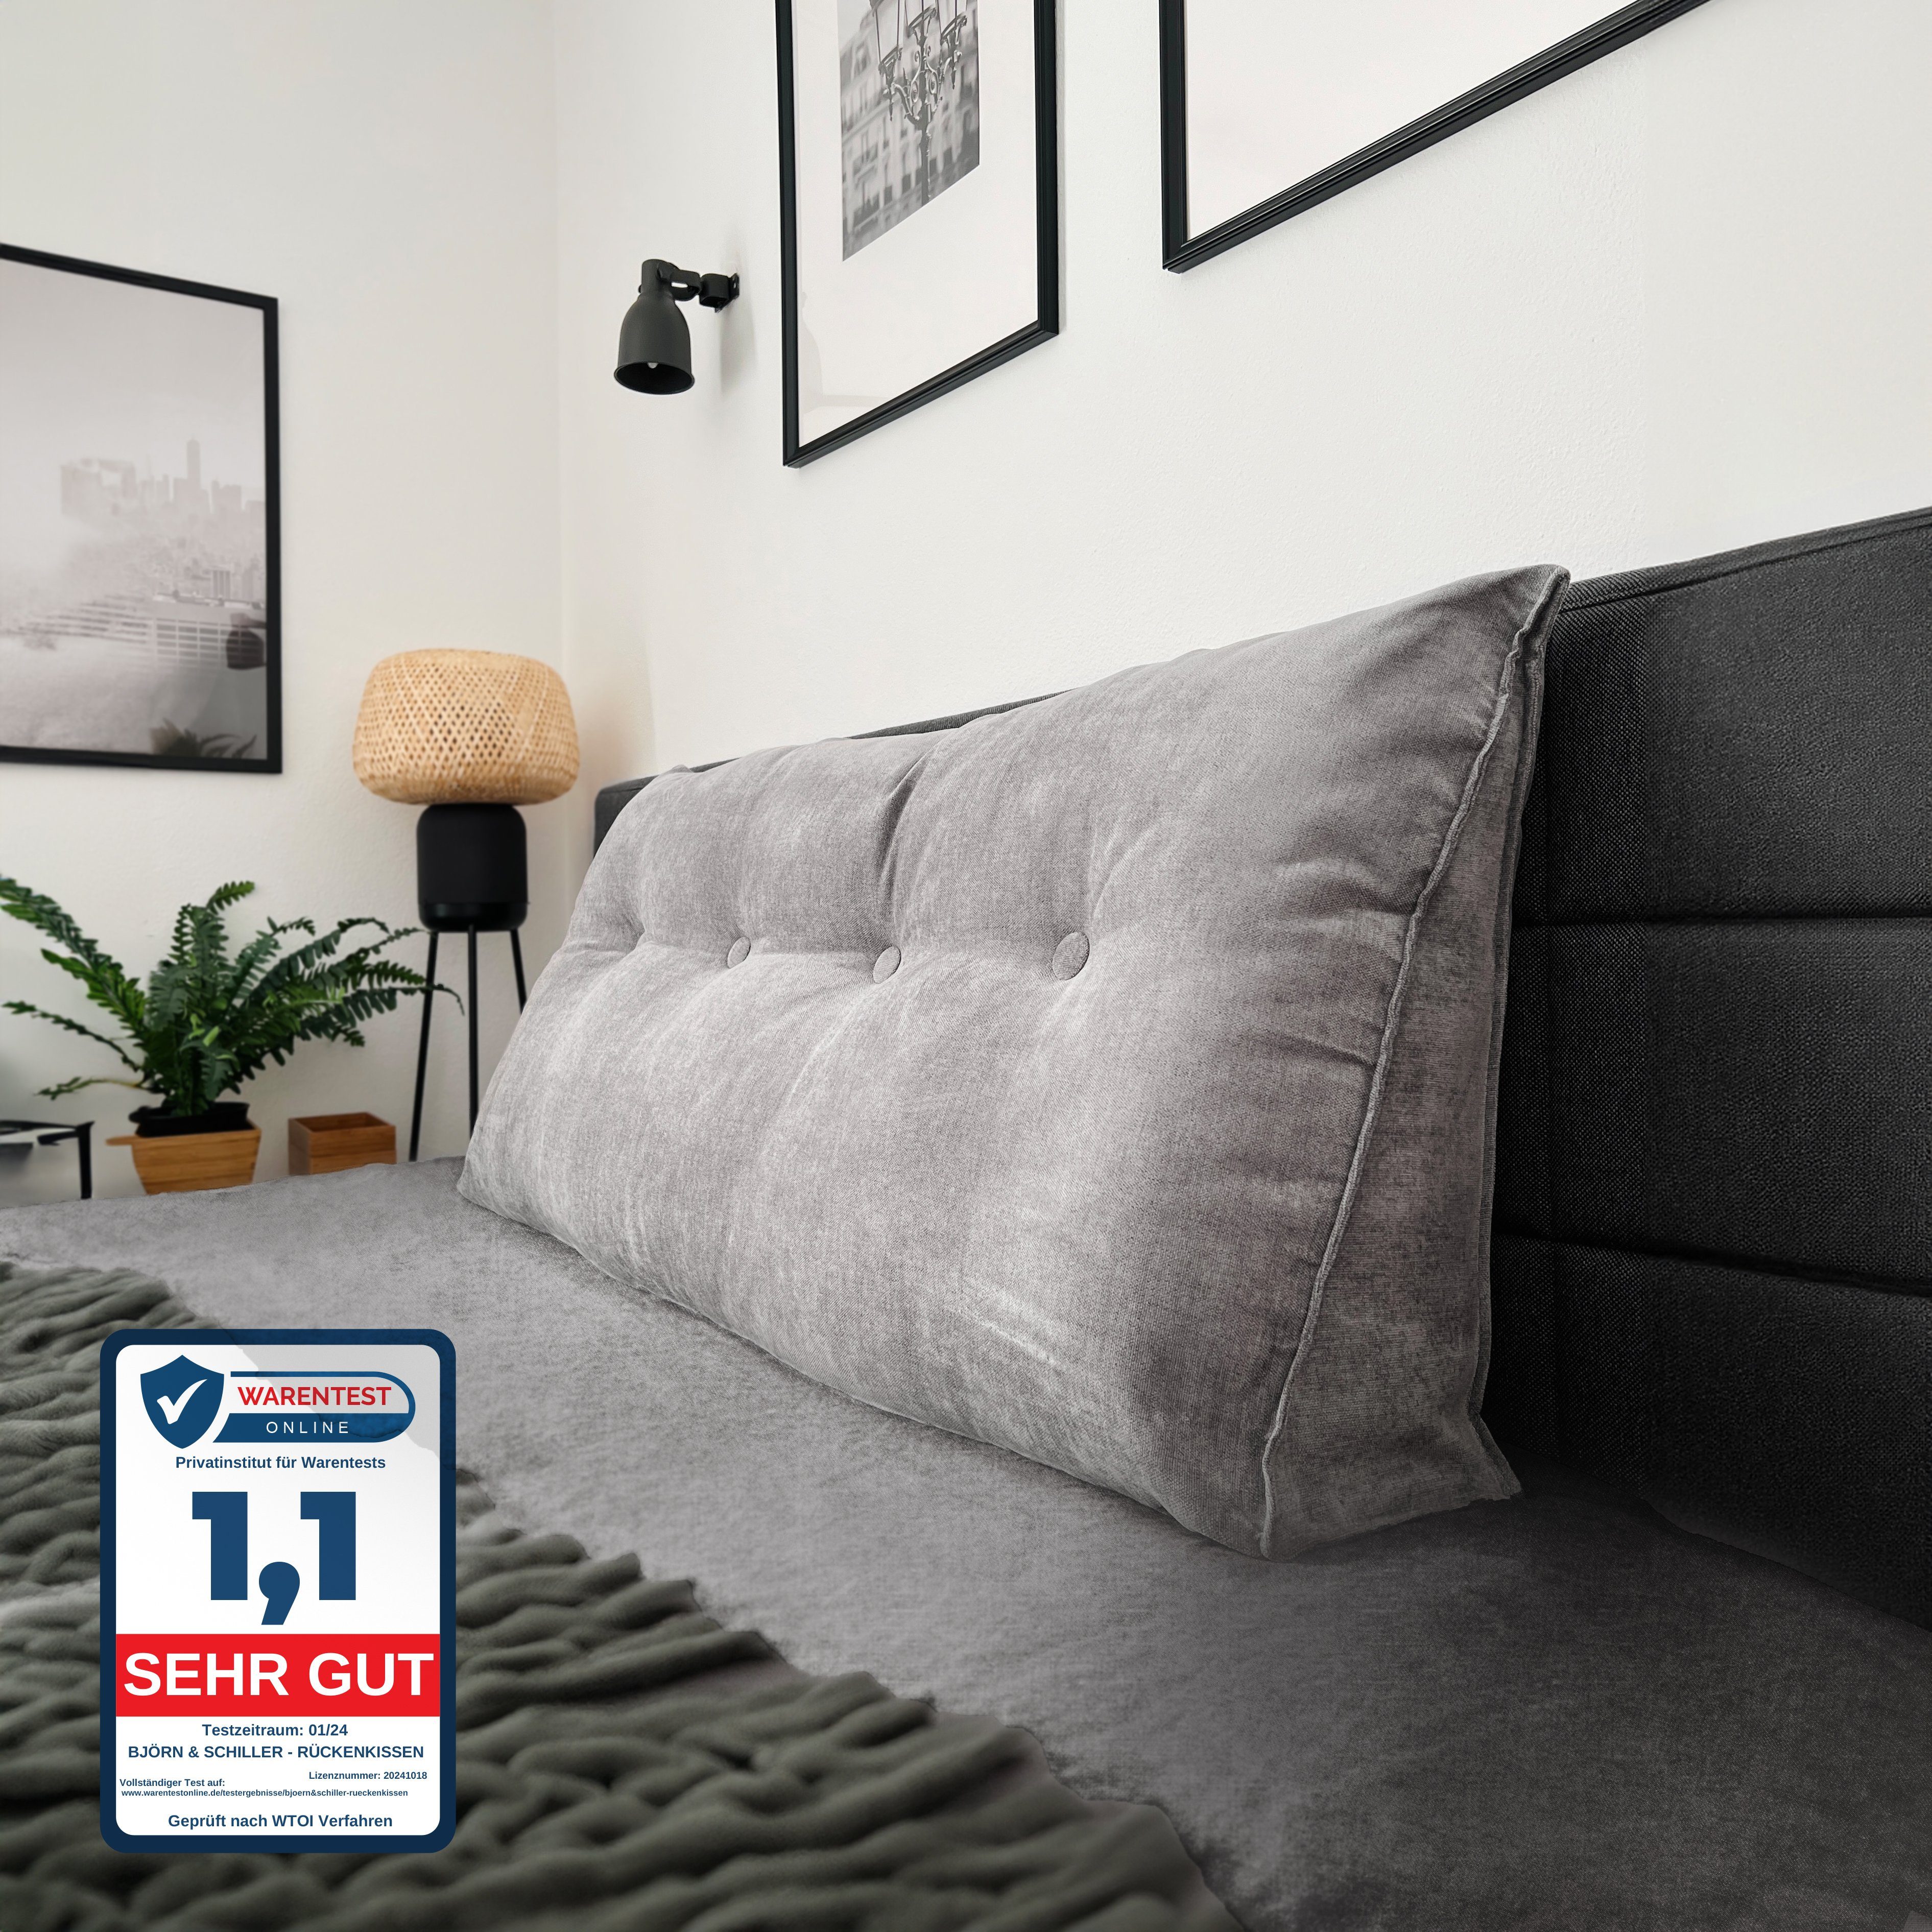 Björn&Schiller Rückenkissen grau dreieckiges keilförmiges, Lesekissen für  Bett und Sofa, groß, Keilkissen mit waschbarem Bezug, Ideal zum Anlehnen im  Bett